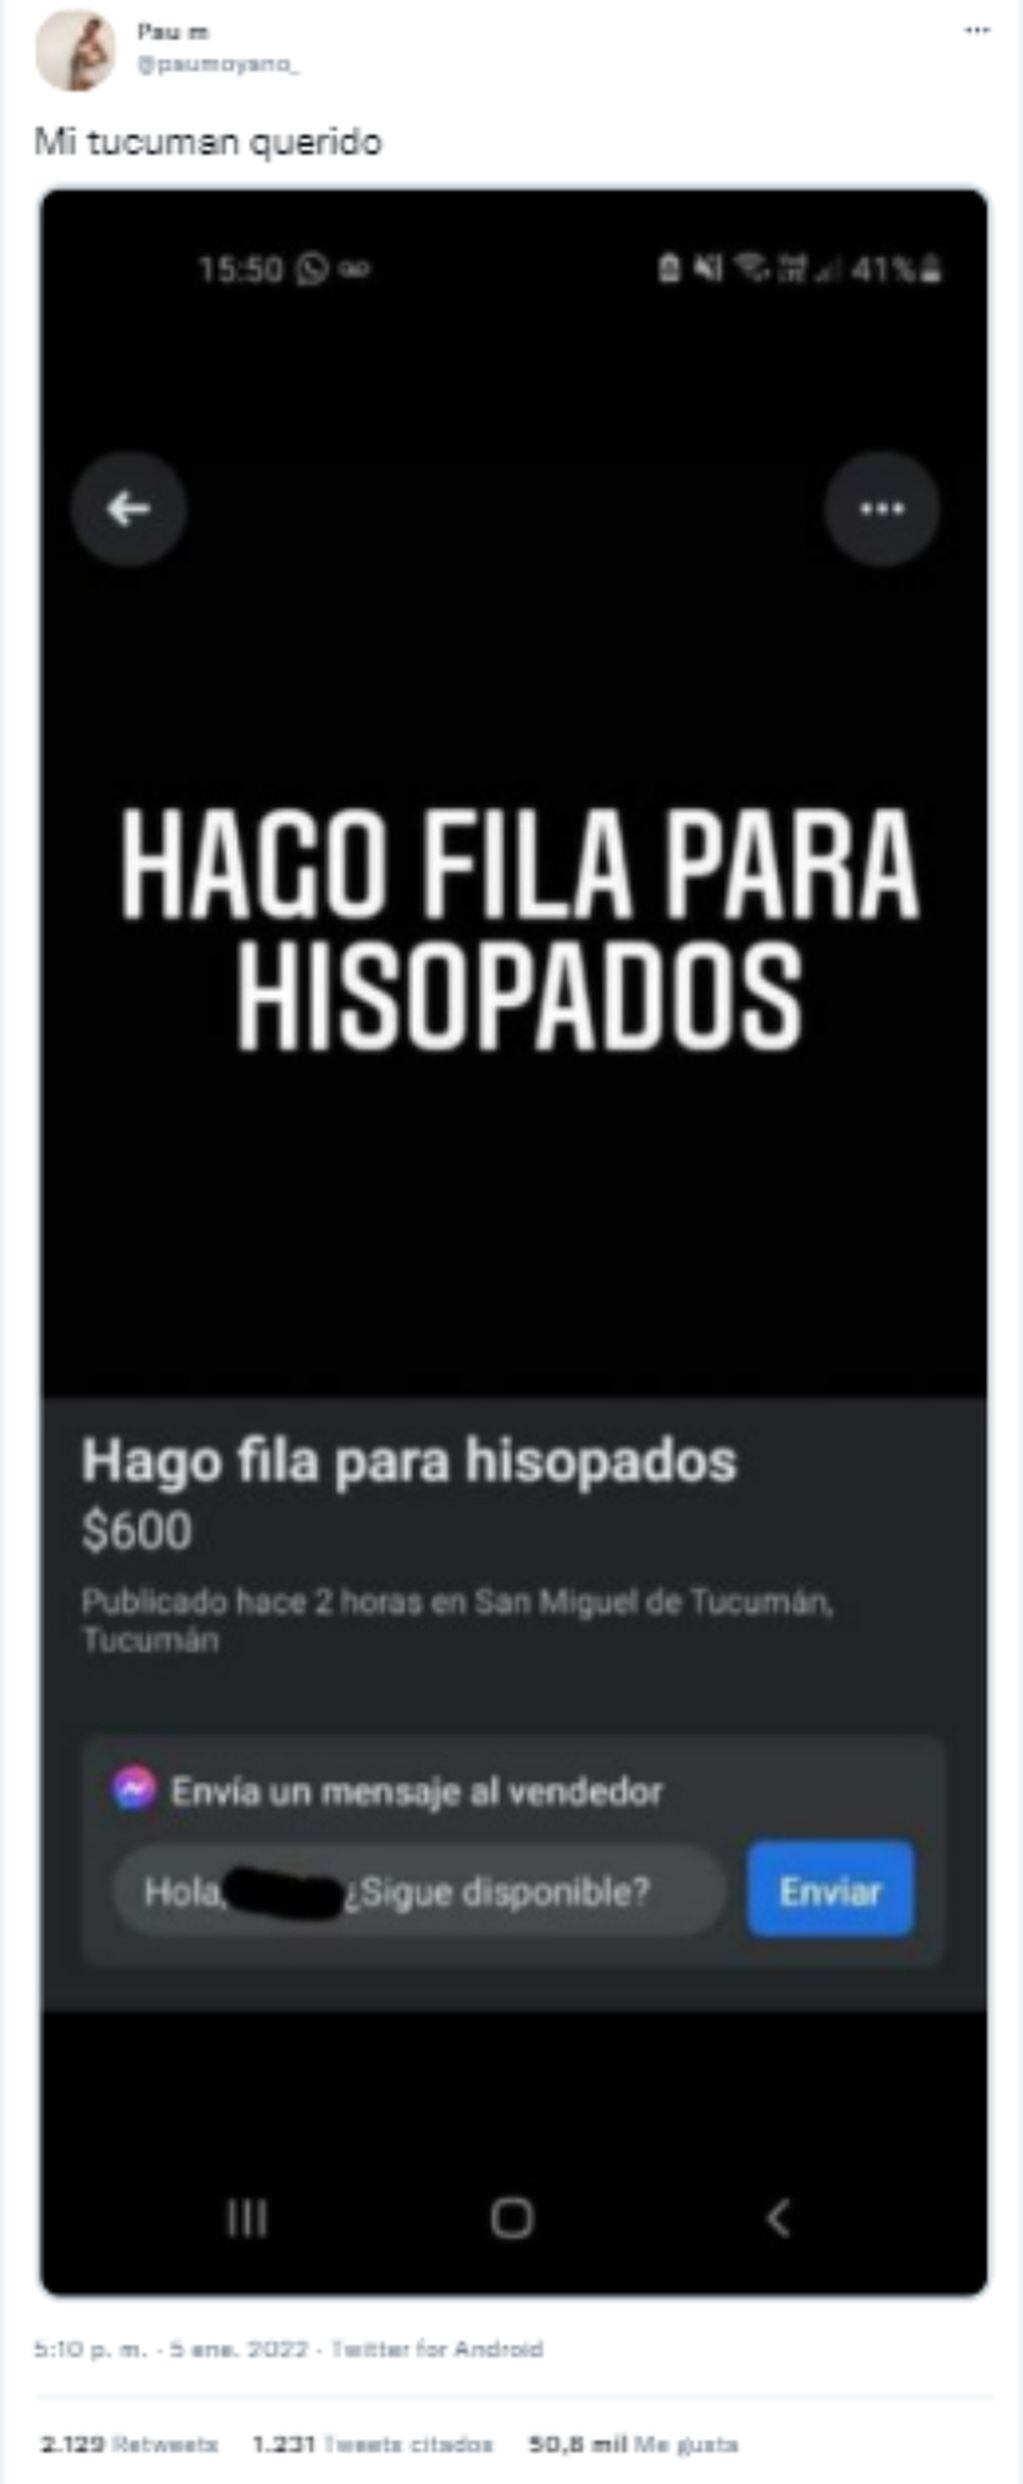 En Tucumán ofrecen hacer la fila del hisopado por $600.